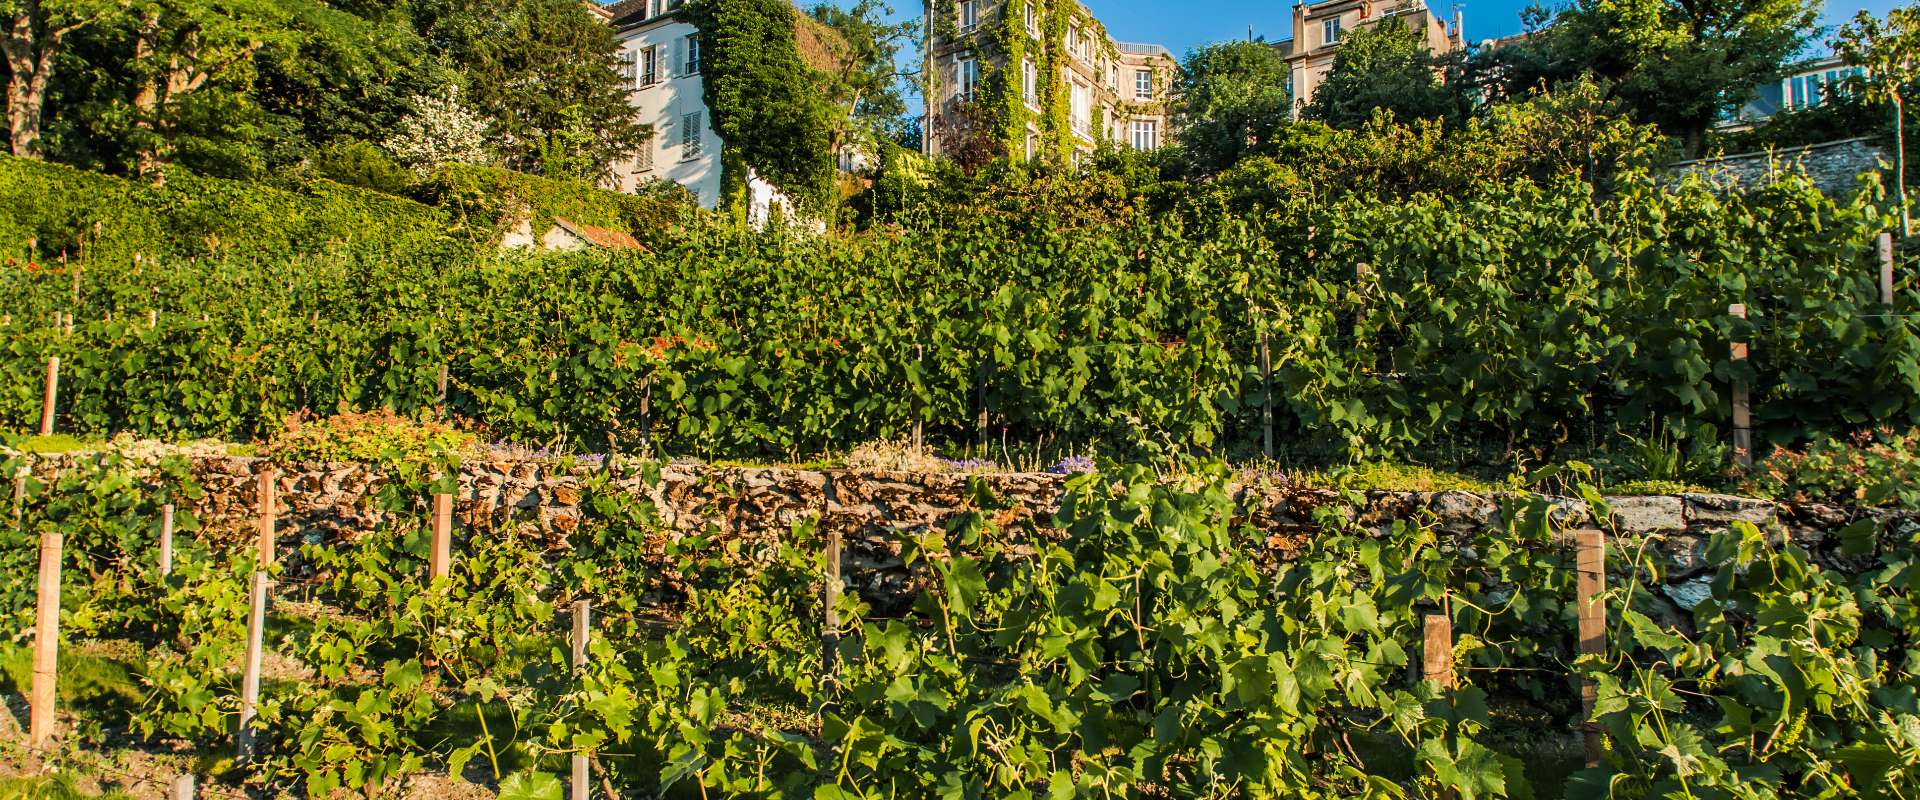 Vineyard-Montmartre